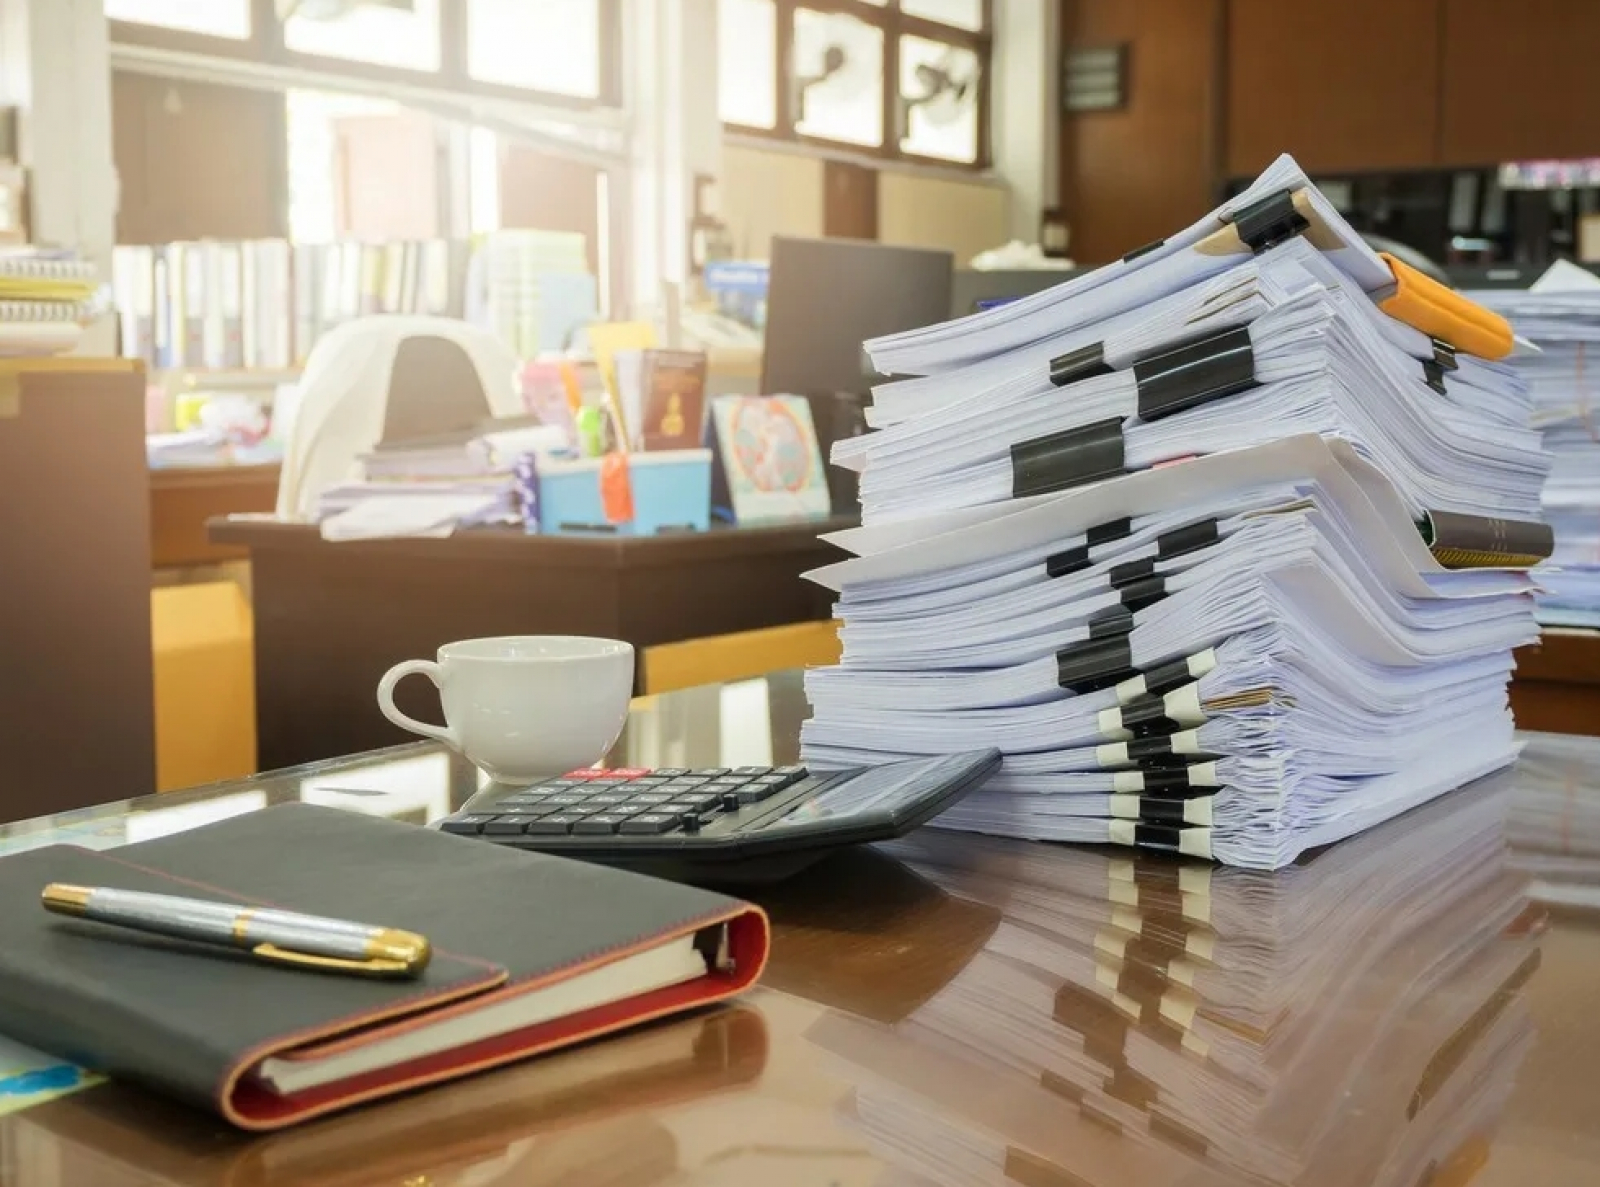 Office papers. Бумаги на столе. Много бумаг на столе. Бумага для офиса. Стопка документов на столе в офисе.